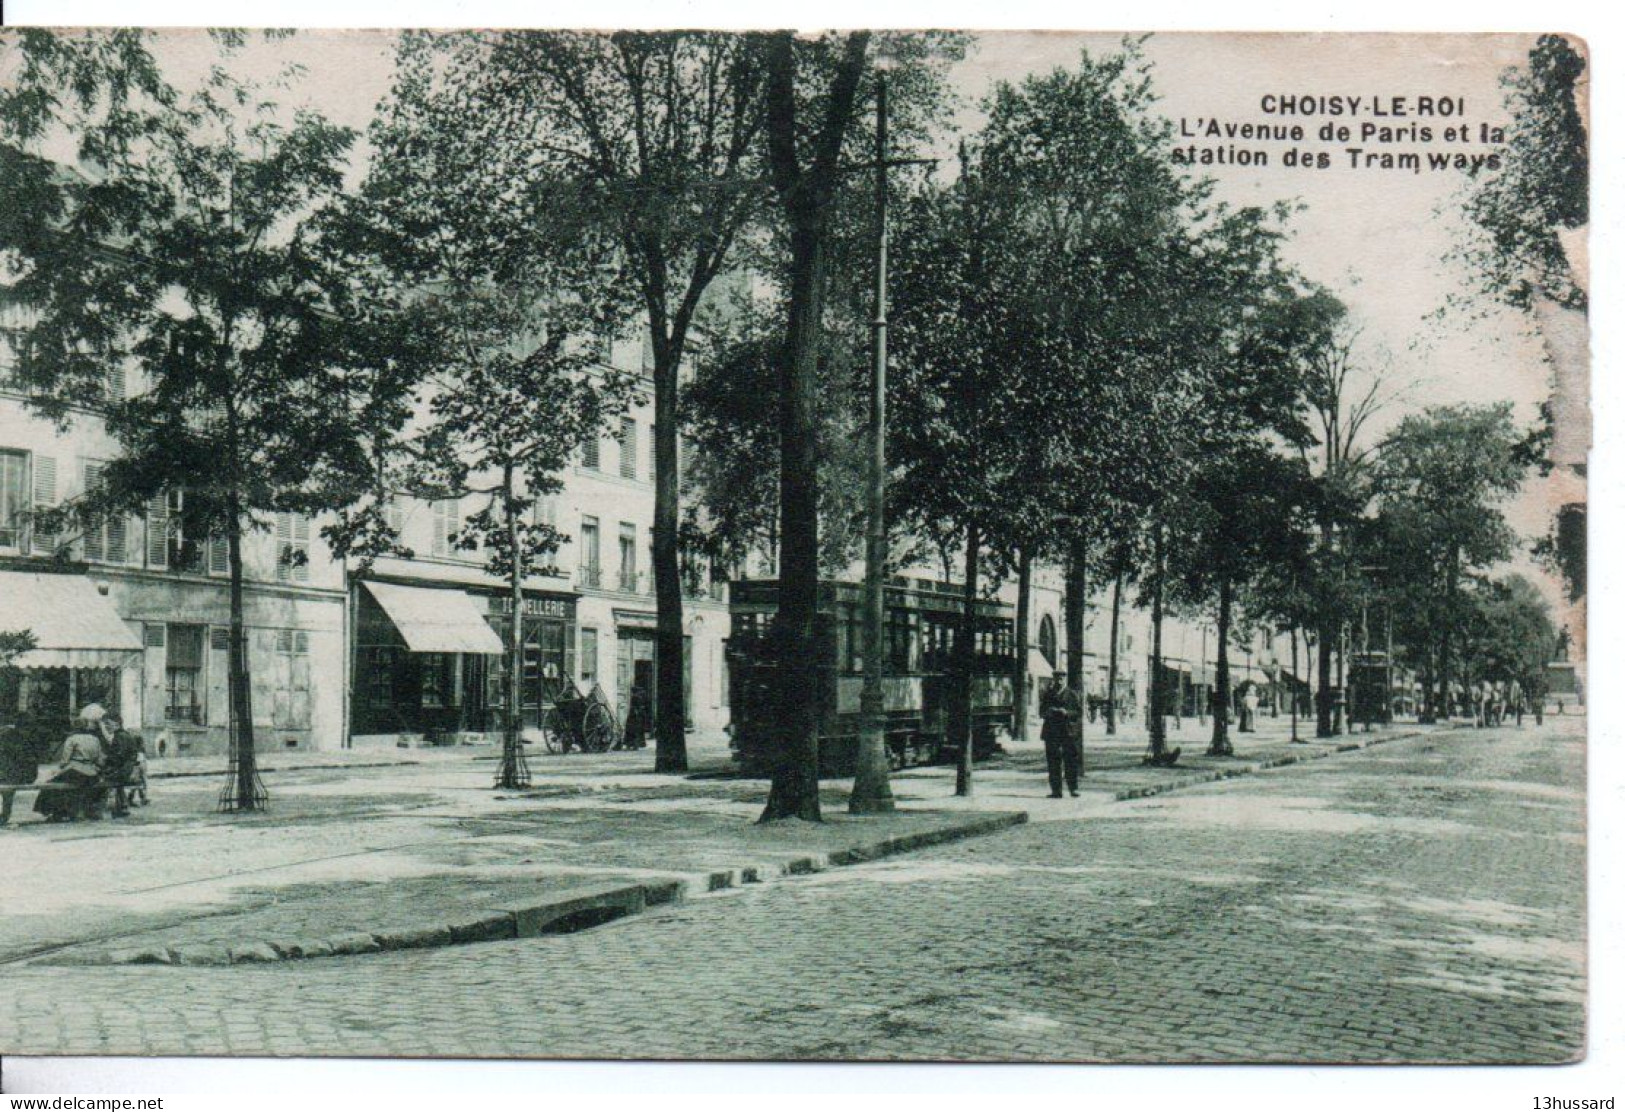 Carte Postale Ancienne Choisy Le Roi - L'Avenue De Paris Et La Station De Tramways - Chemin De Fer - Choisy Le Roi